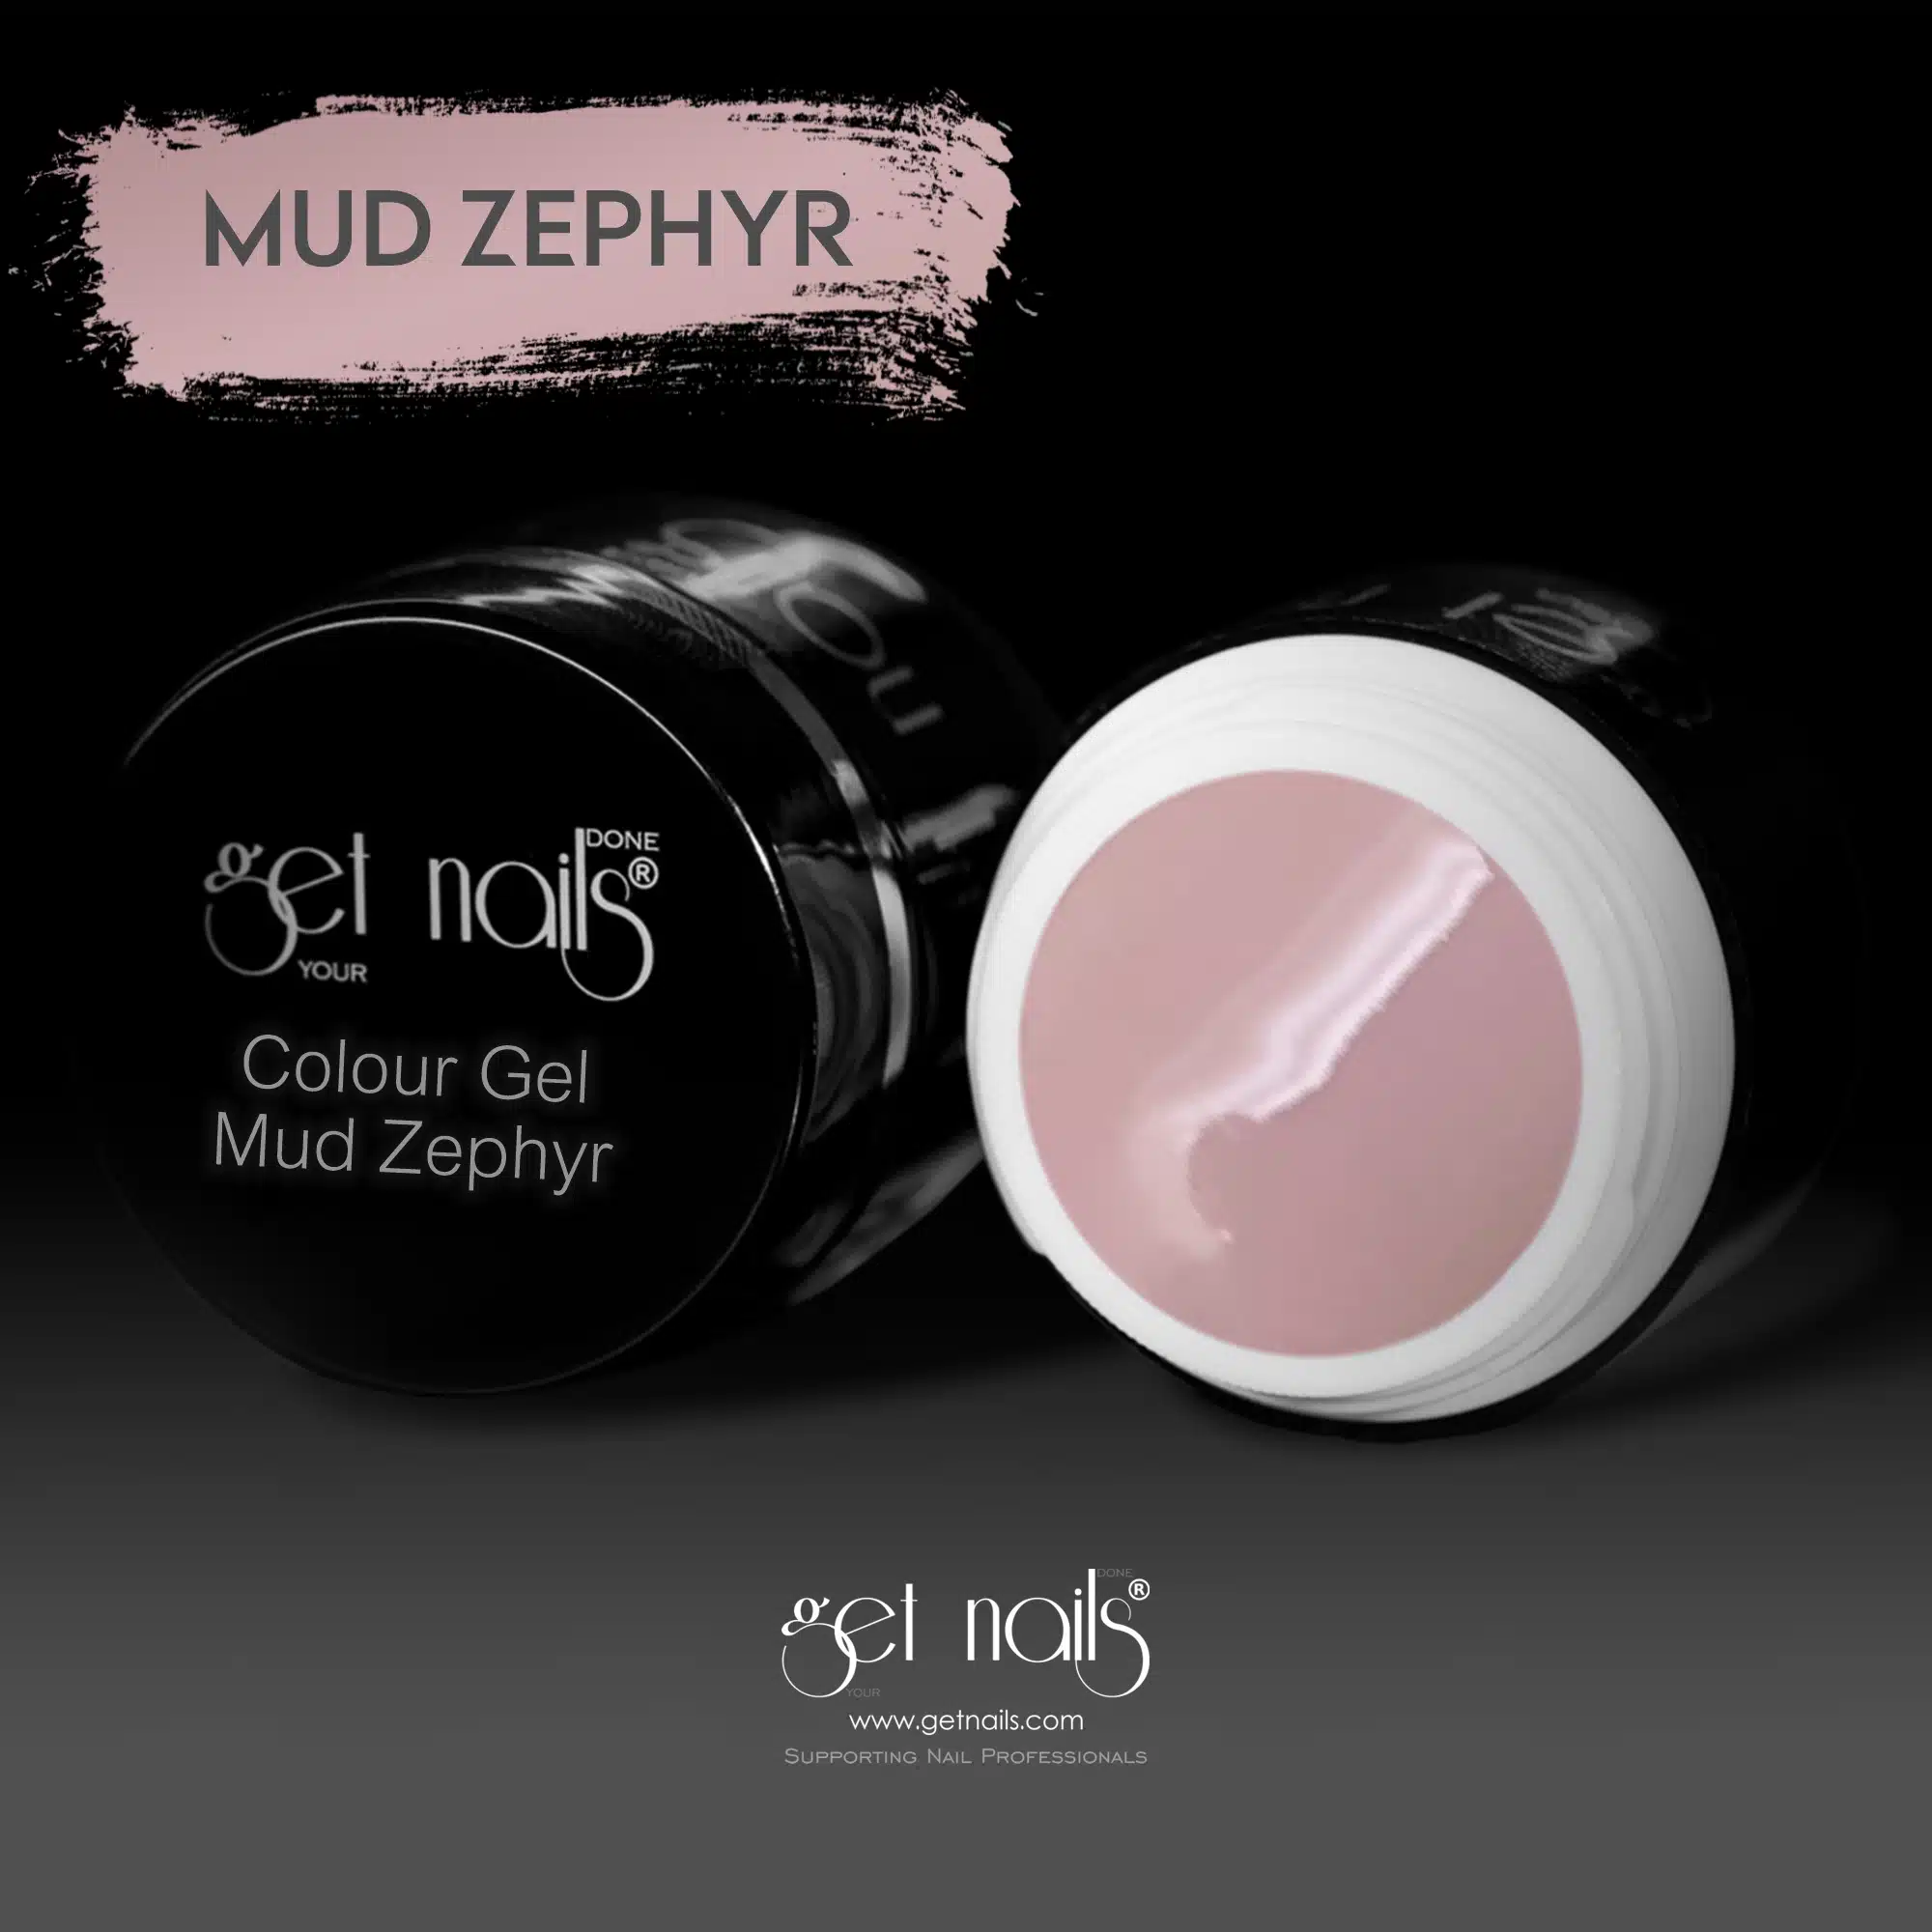 Get Nails Austria - Gel colorato Mud Zephyr 5g